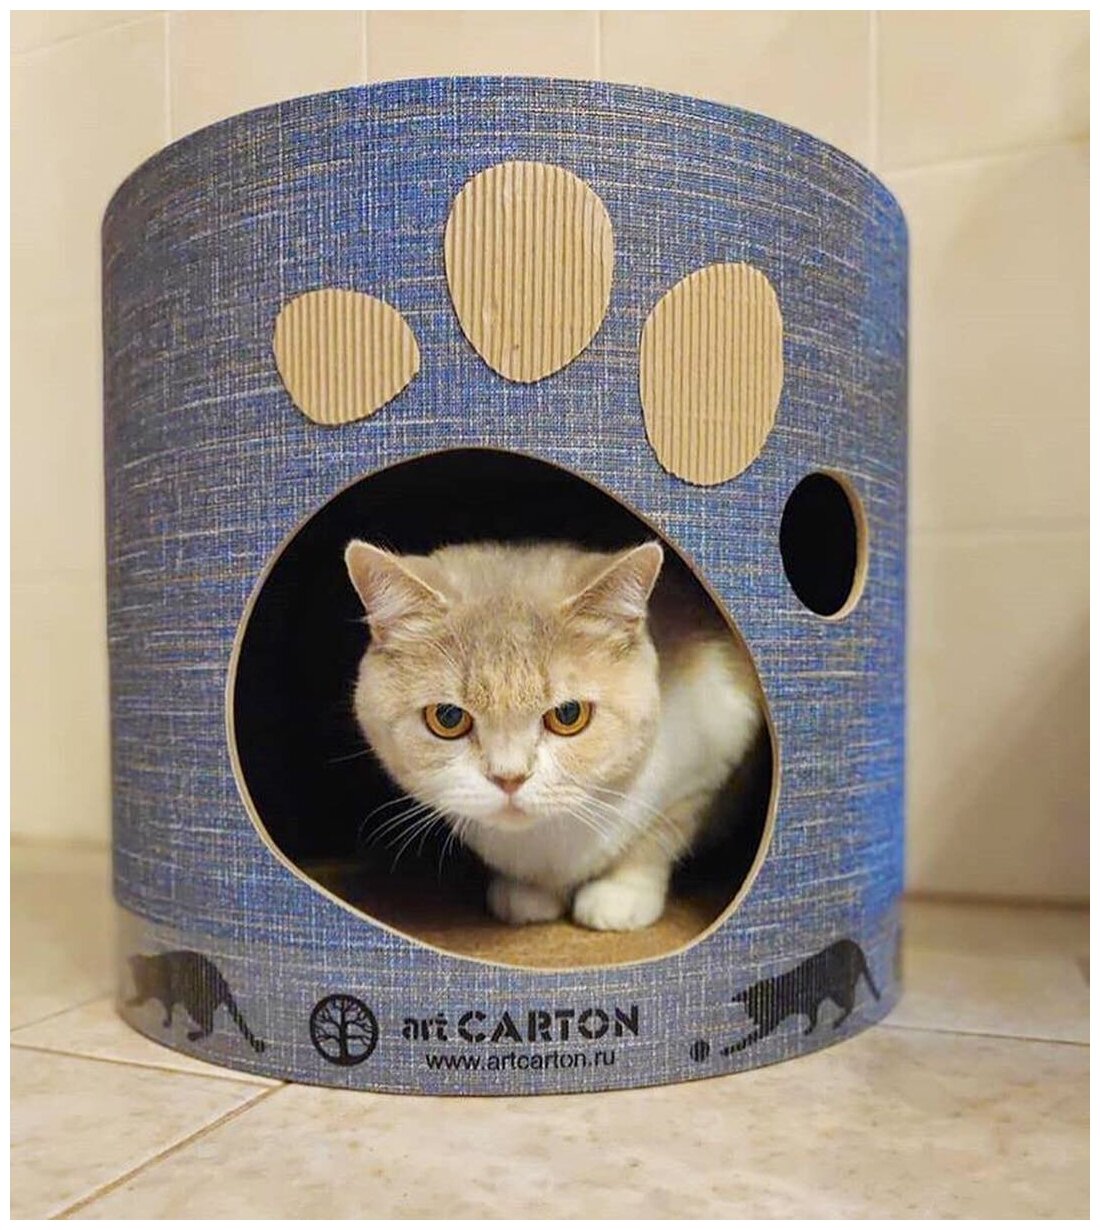 Домик с когтеточкой из картона TOWER диаметр 41 см арткартон для крупных кошек до 6 кг с двумя уровнями и жестким бортиком. Срок службы до 5-ти лет. - фотография № 4